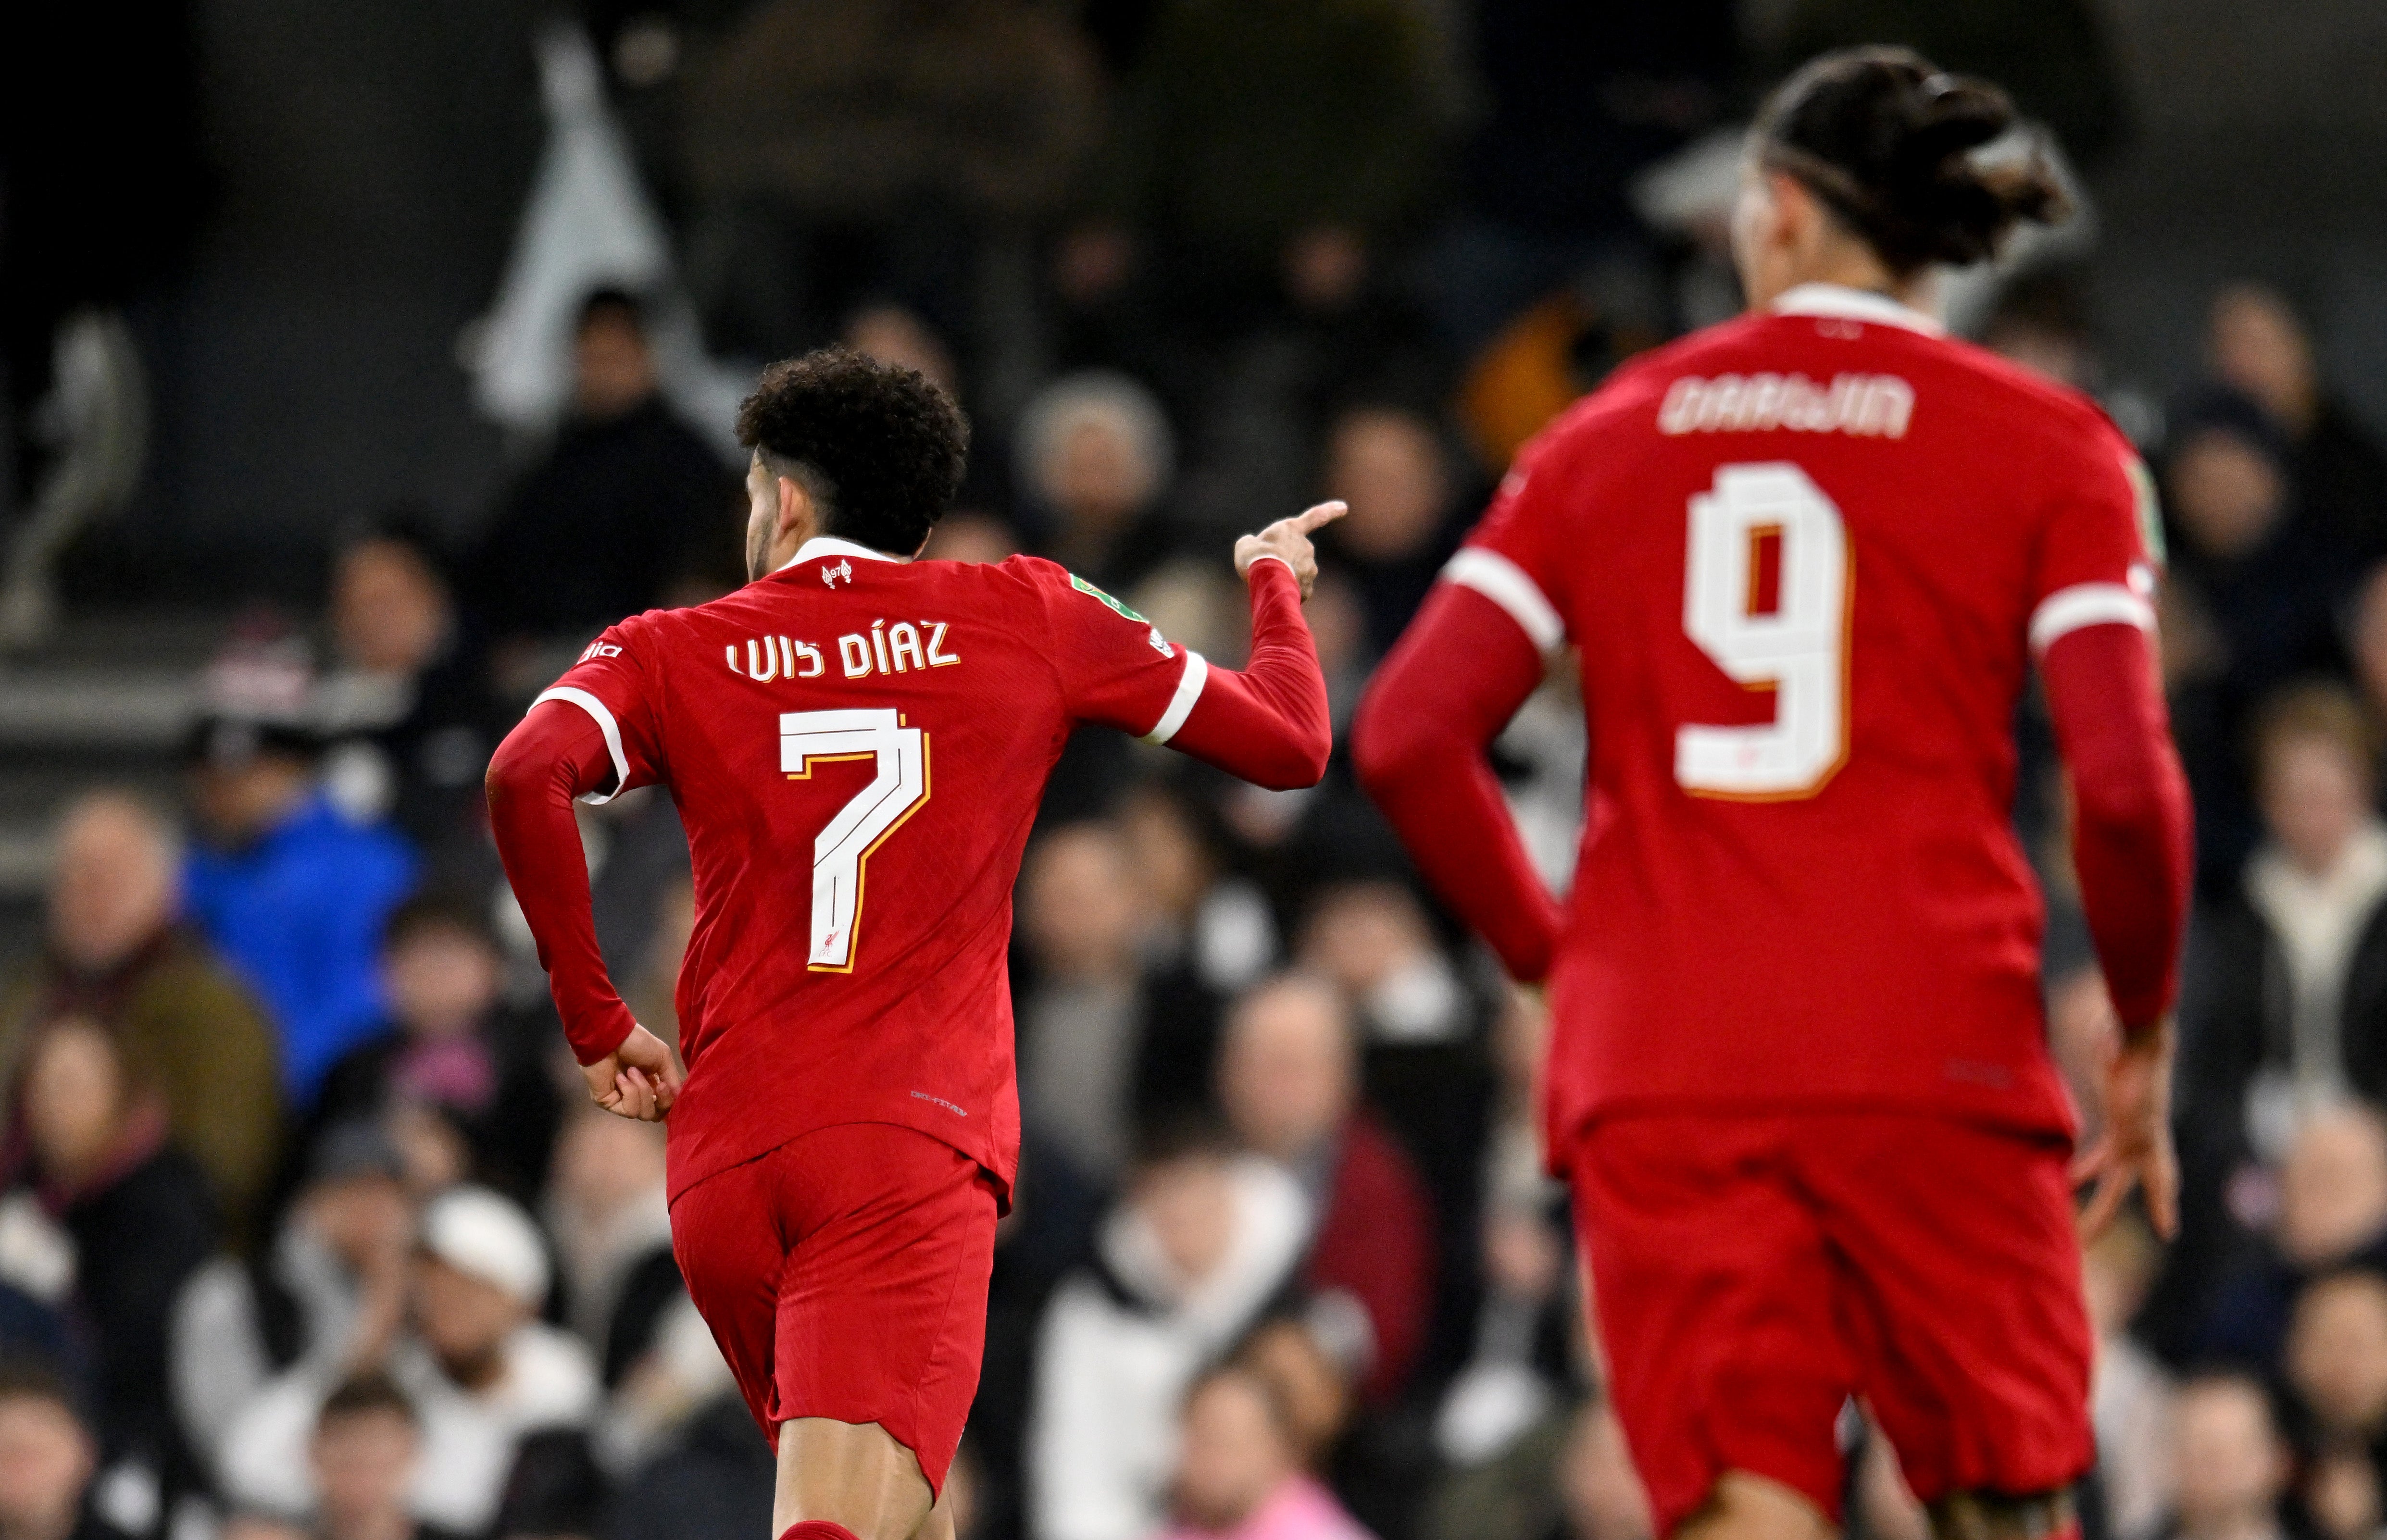 Luis Diaz celebrates scoring for Liverpool at Fulham